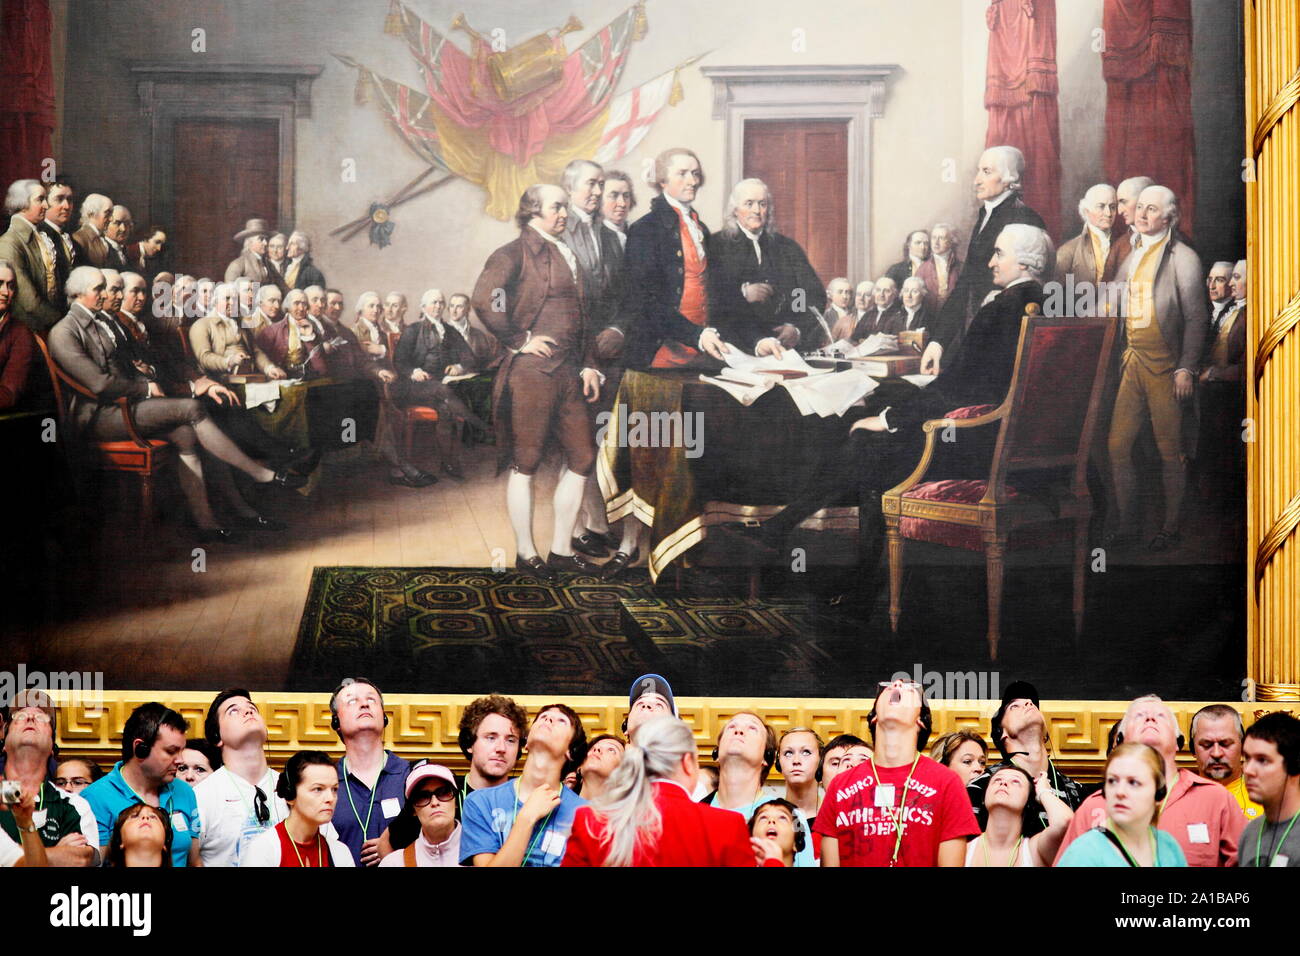 Touristen freuen sich auf ein Gemälde der Gründerväter in der Rotunde des United States Capitol. Während die Schuldenbremse Tauziehen, die Amerikaner Vertrauen im Kongress zurück. Das Gemälde von John Trumbull ist mit dem Titel "Die Erklärung der Unabhängigkeit" und 1817 Auftraggeber war. Stockfoto